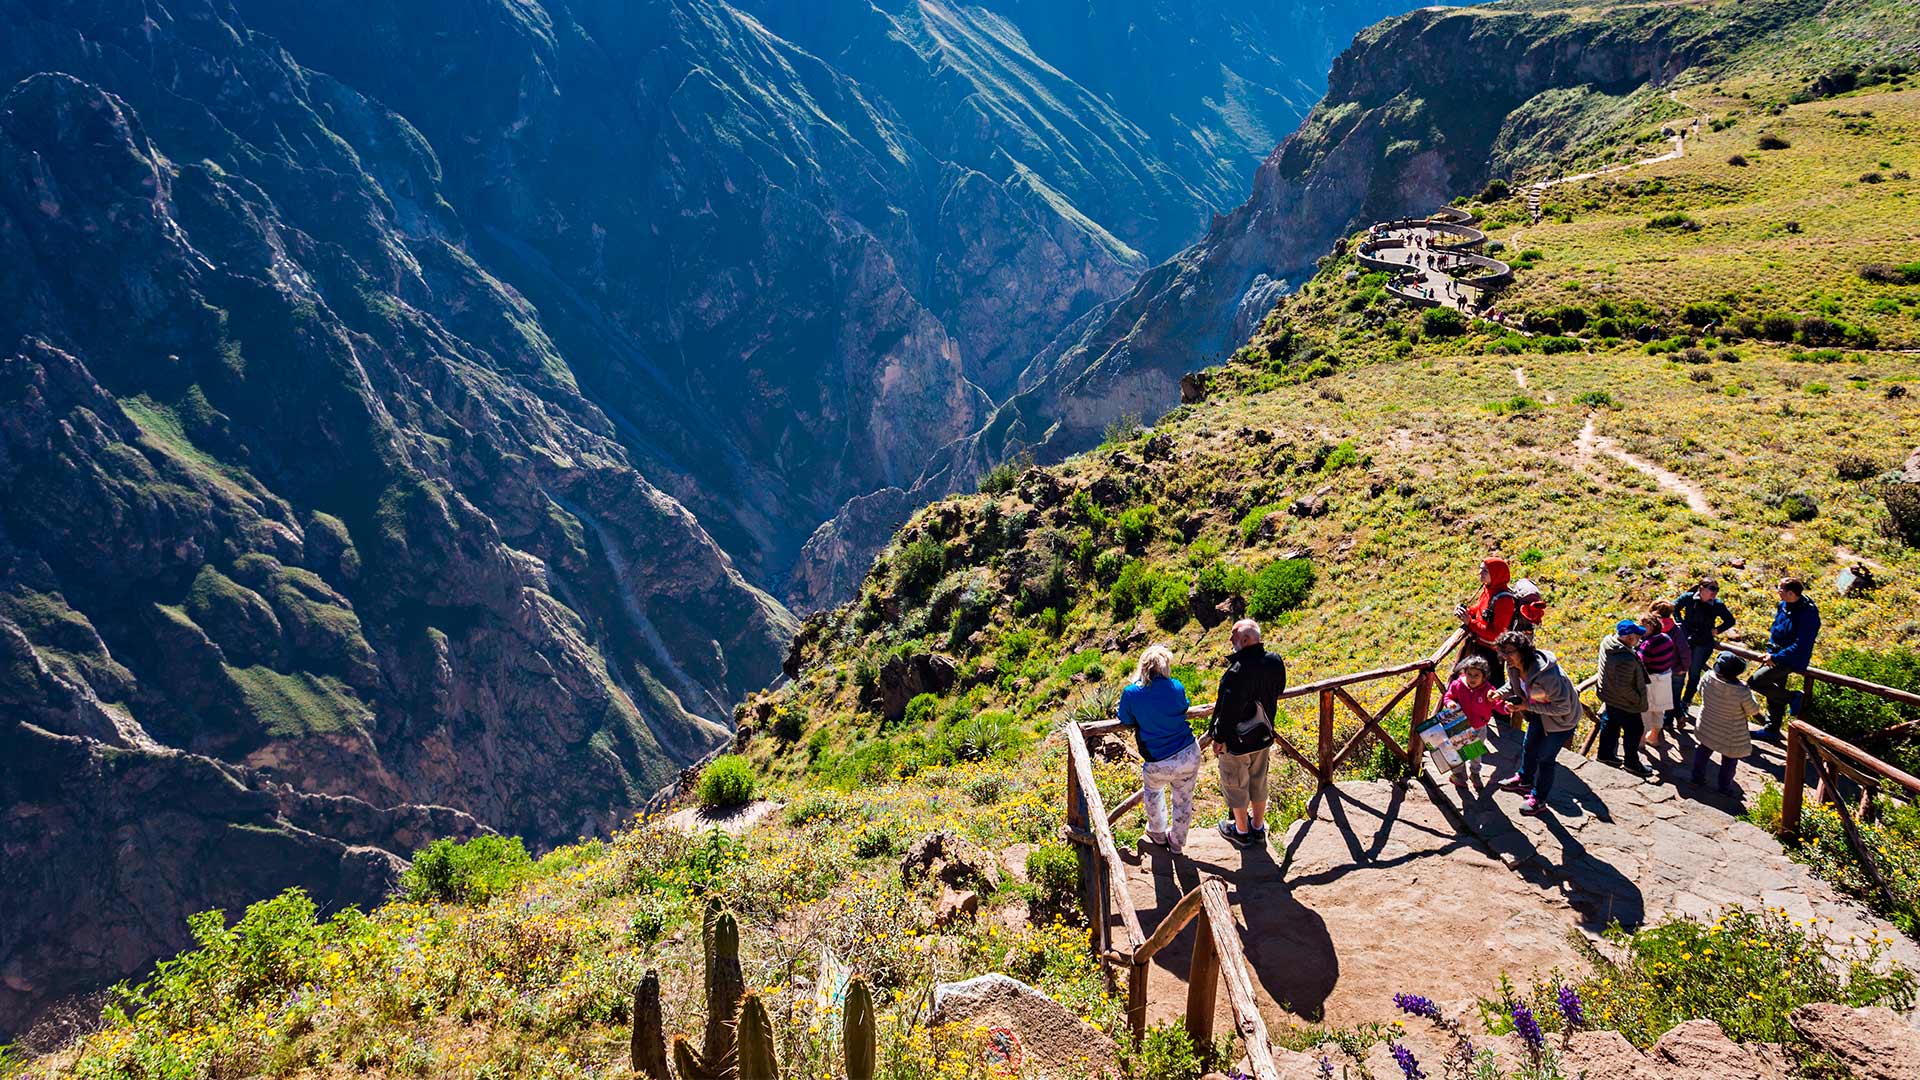 Cañon Del Colca En Arequipa Perú Travel